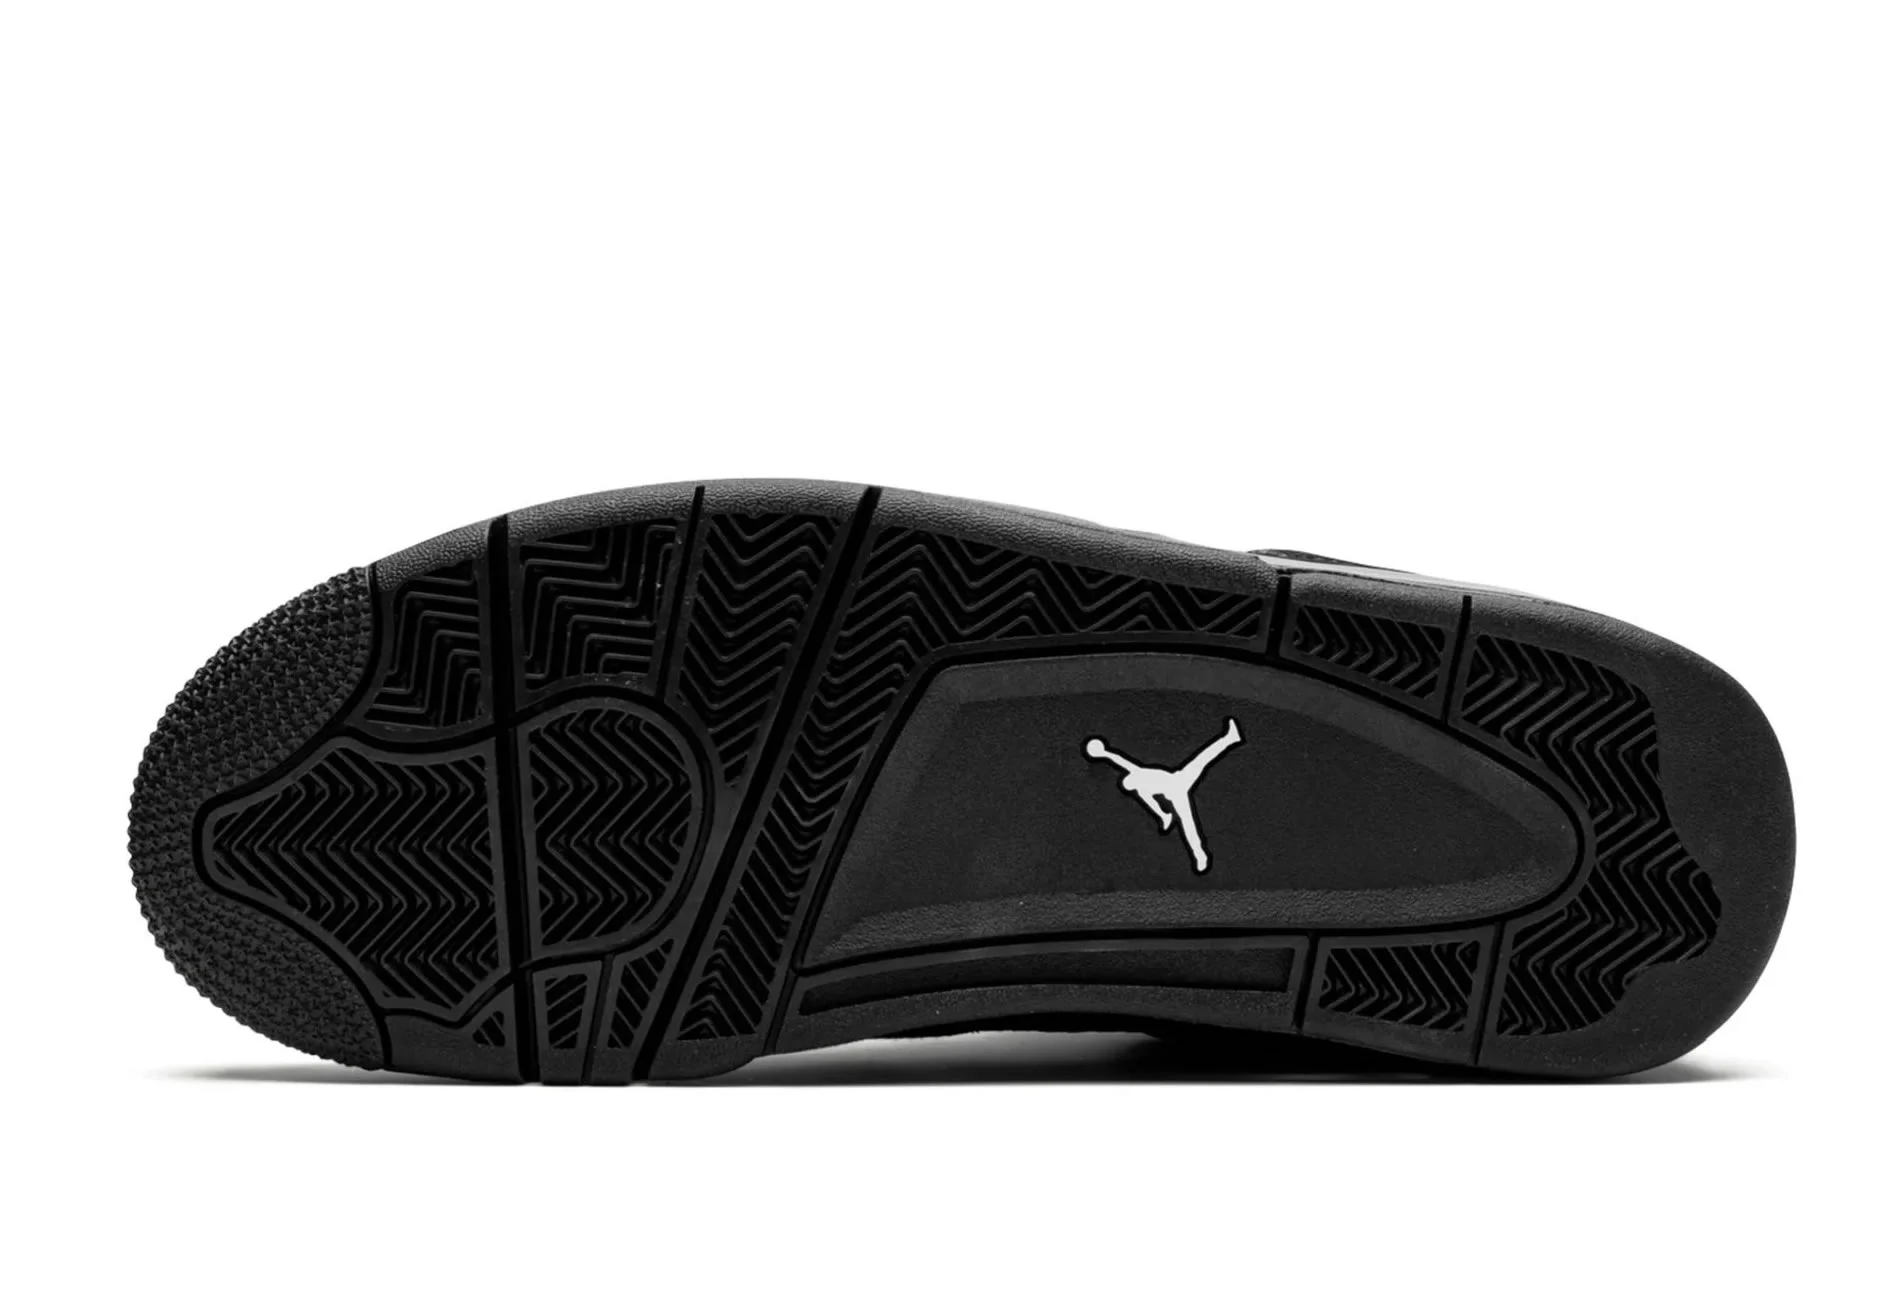 Air Jordan 4 Retro Black Cat 2020 Cu1110 010 Ljr Batch Sneakers (5) - www.ljrofficial.com